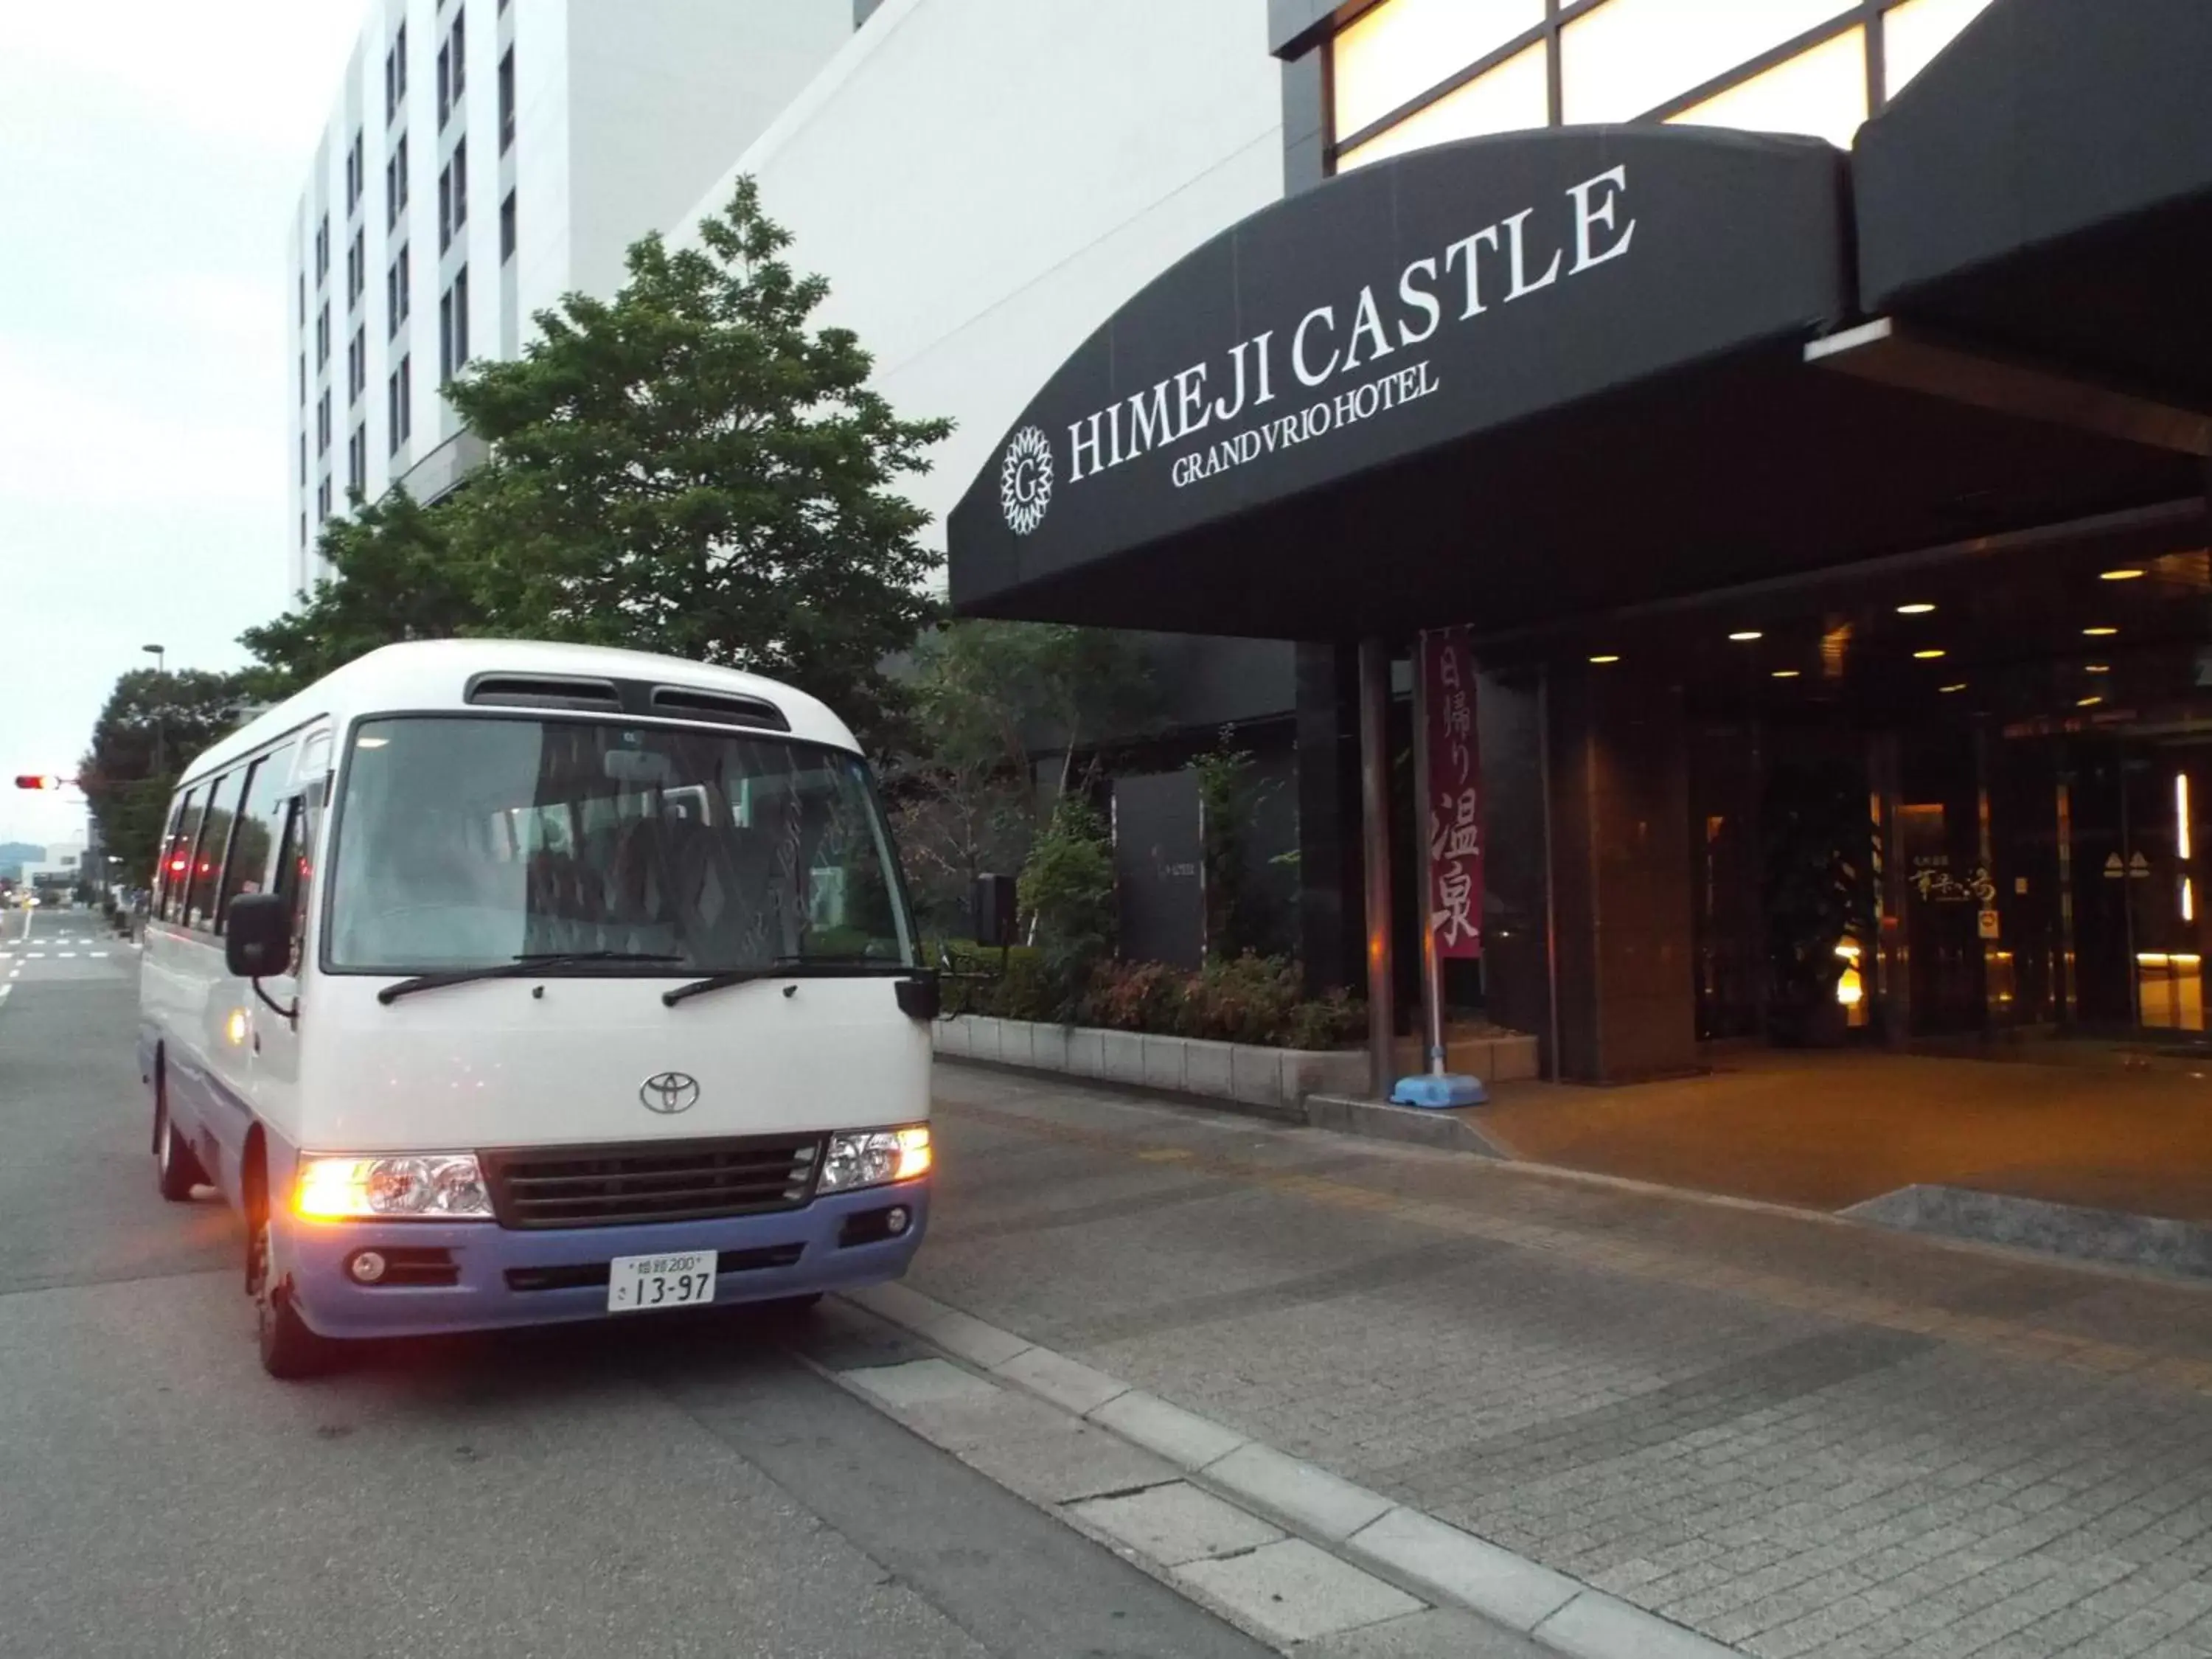 Property building, Facade/Entrance in Himeji Castle Grandvrio Hotel